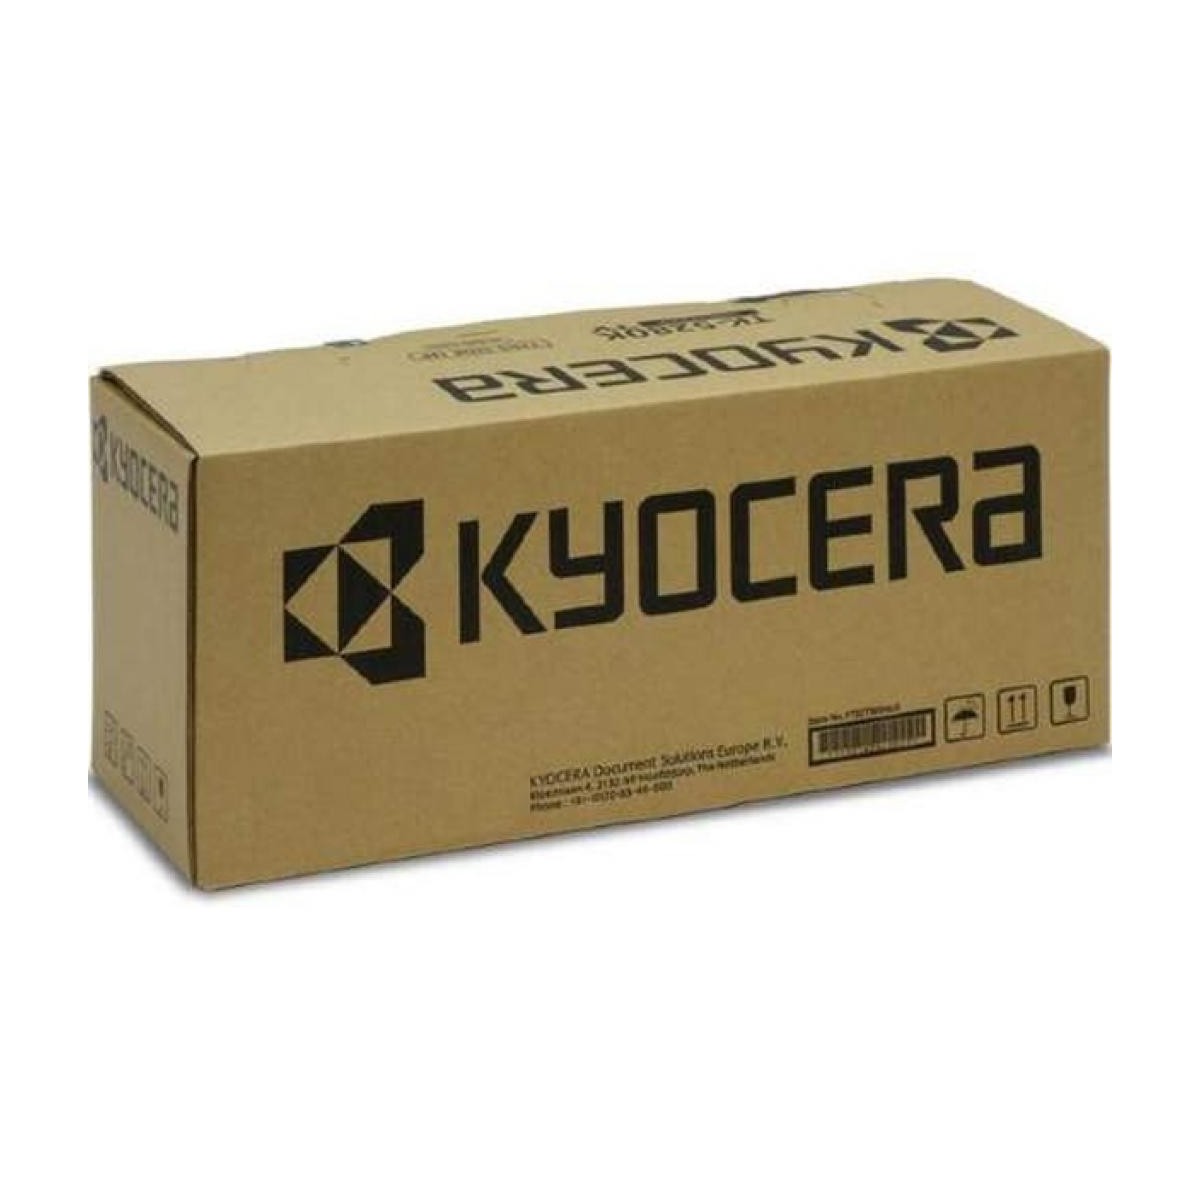 Kyocera Transfer Belt TR-8315A 302MV930